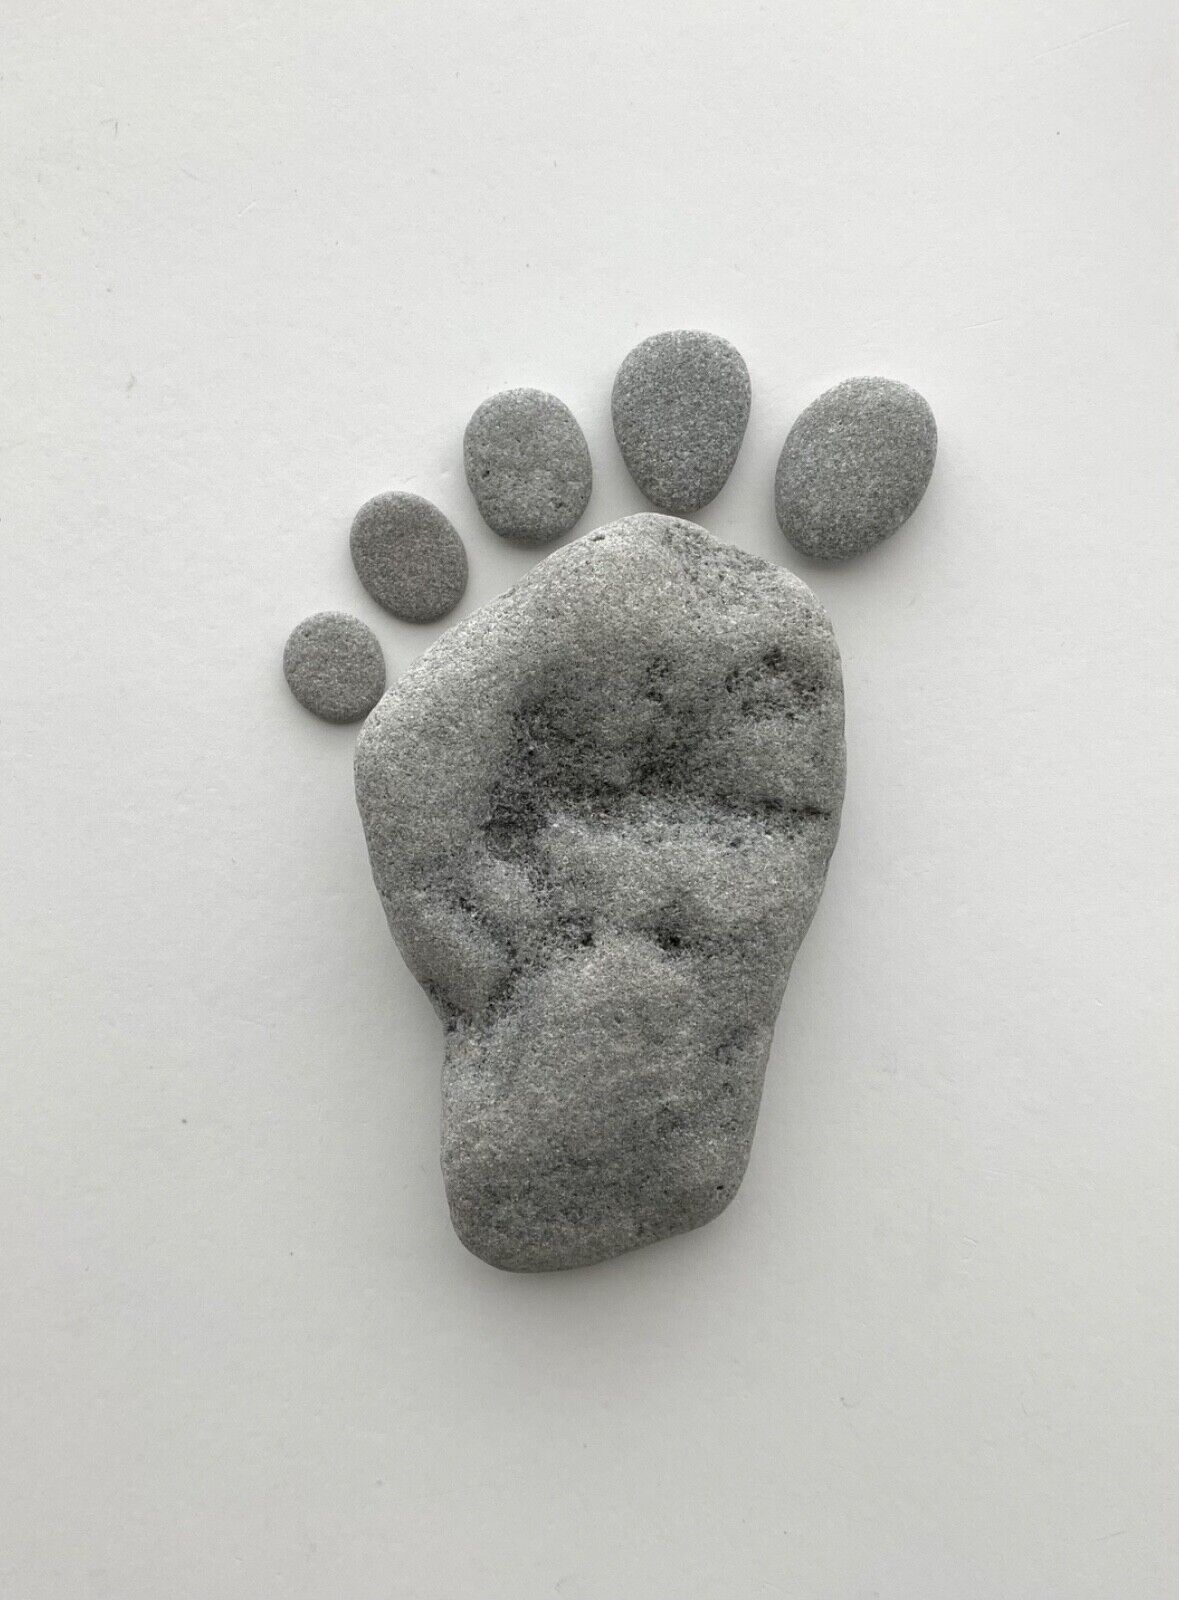 Barefoot Foot Print Rocks Natural Beach Stone Garden Art Sign Craft med USA #F4